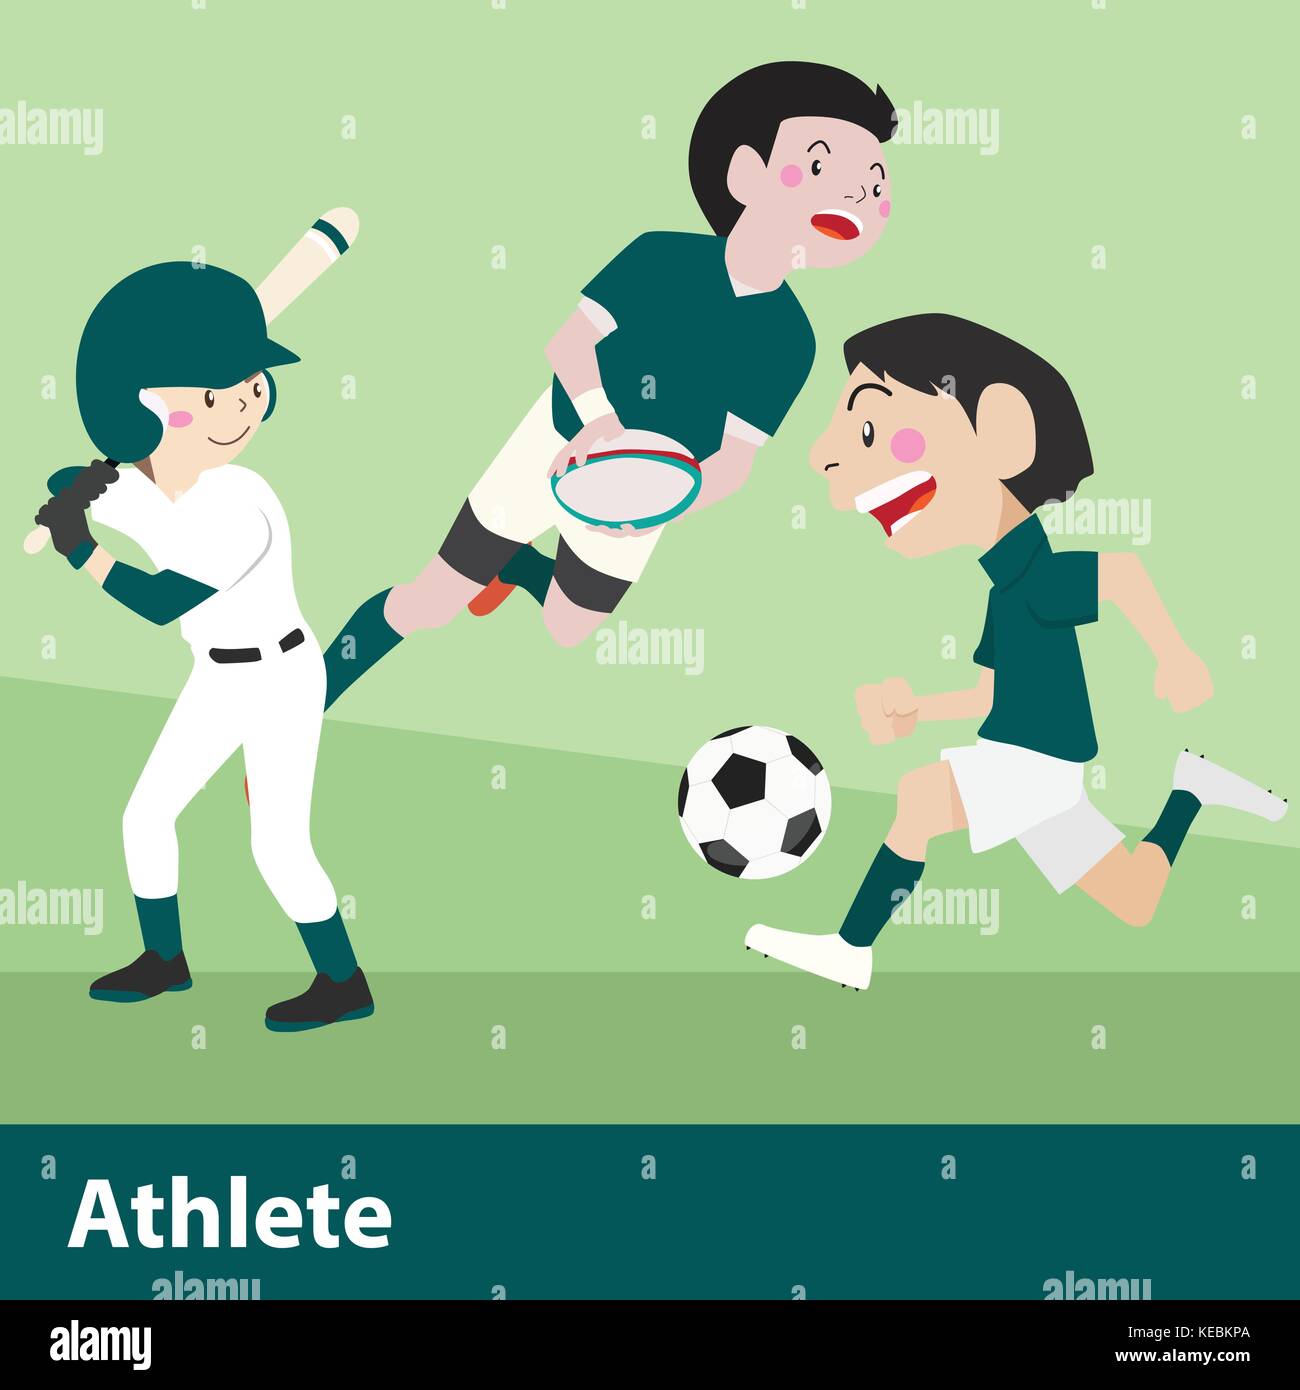 Athletic sport vector cartoon illustration set Stock Vector